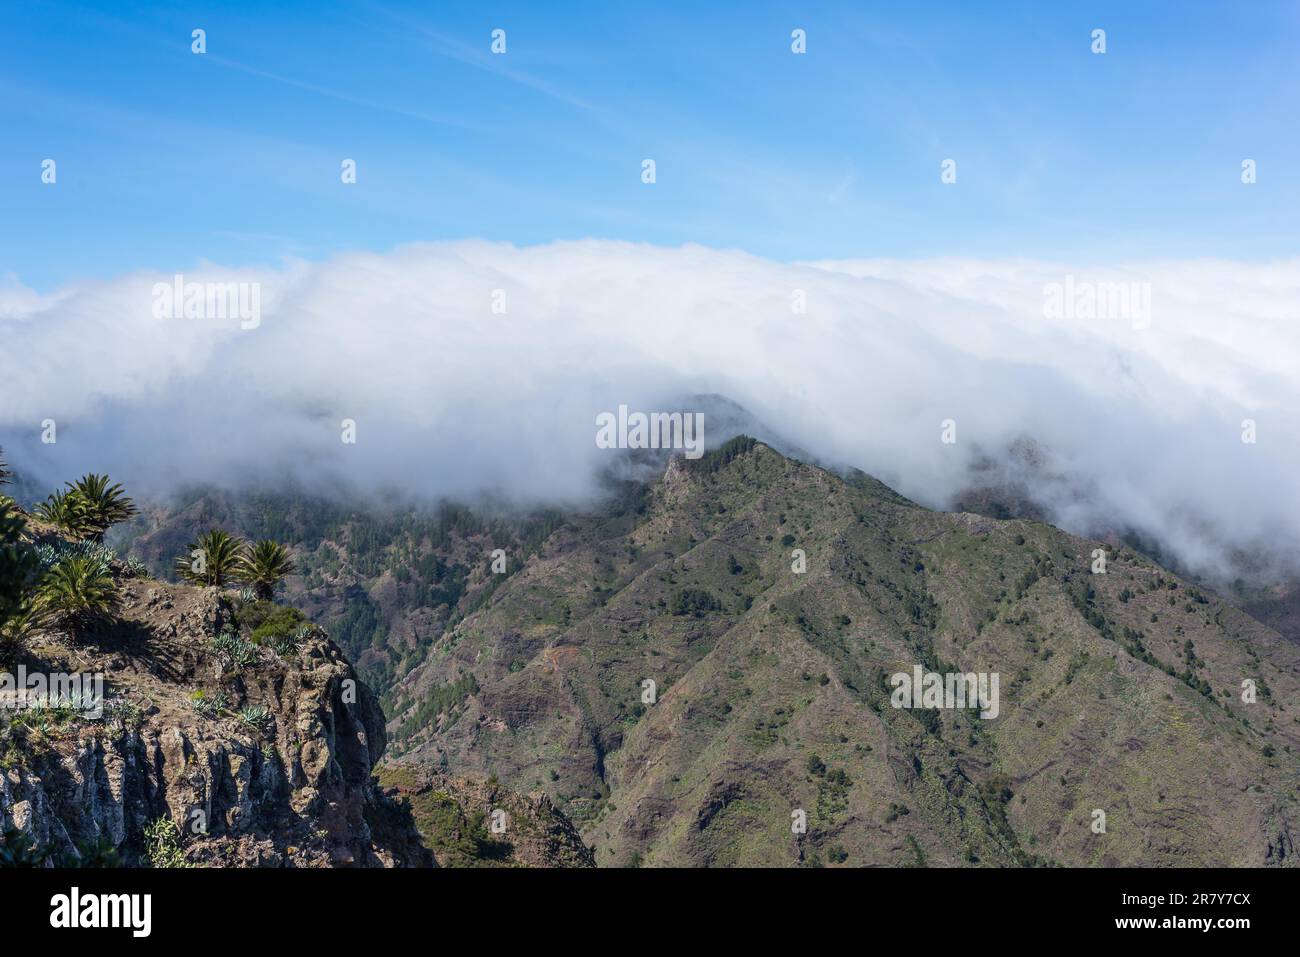 Riesige Wolken und Passatwinde aus subtropischem Klima kommen von den Azoren und erreichen La Gomera in ca. 800m m Höhe. Aussichtspunkt vom Mirador Stockfoto